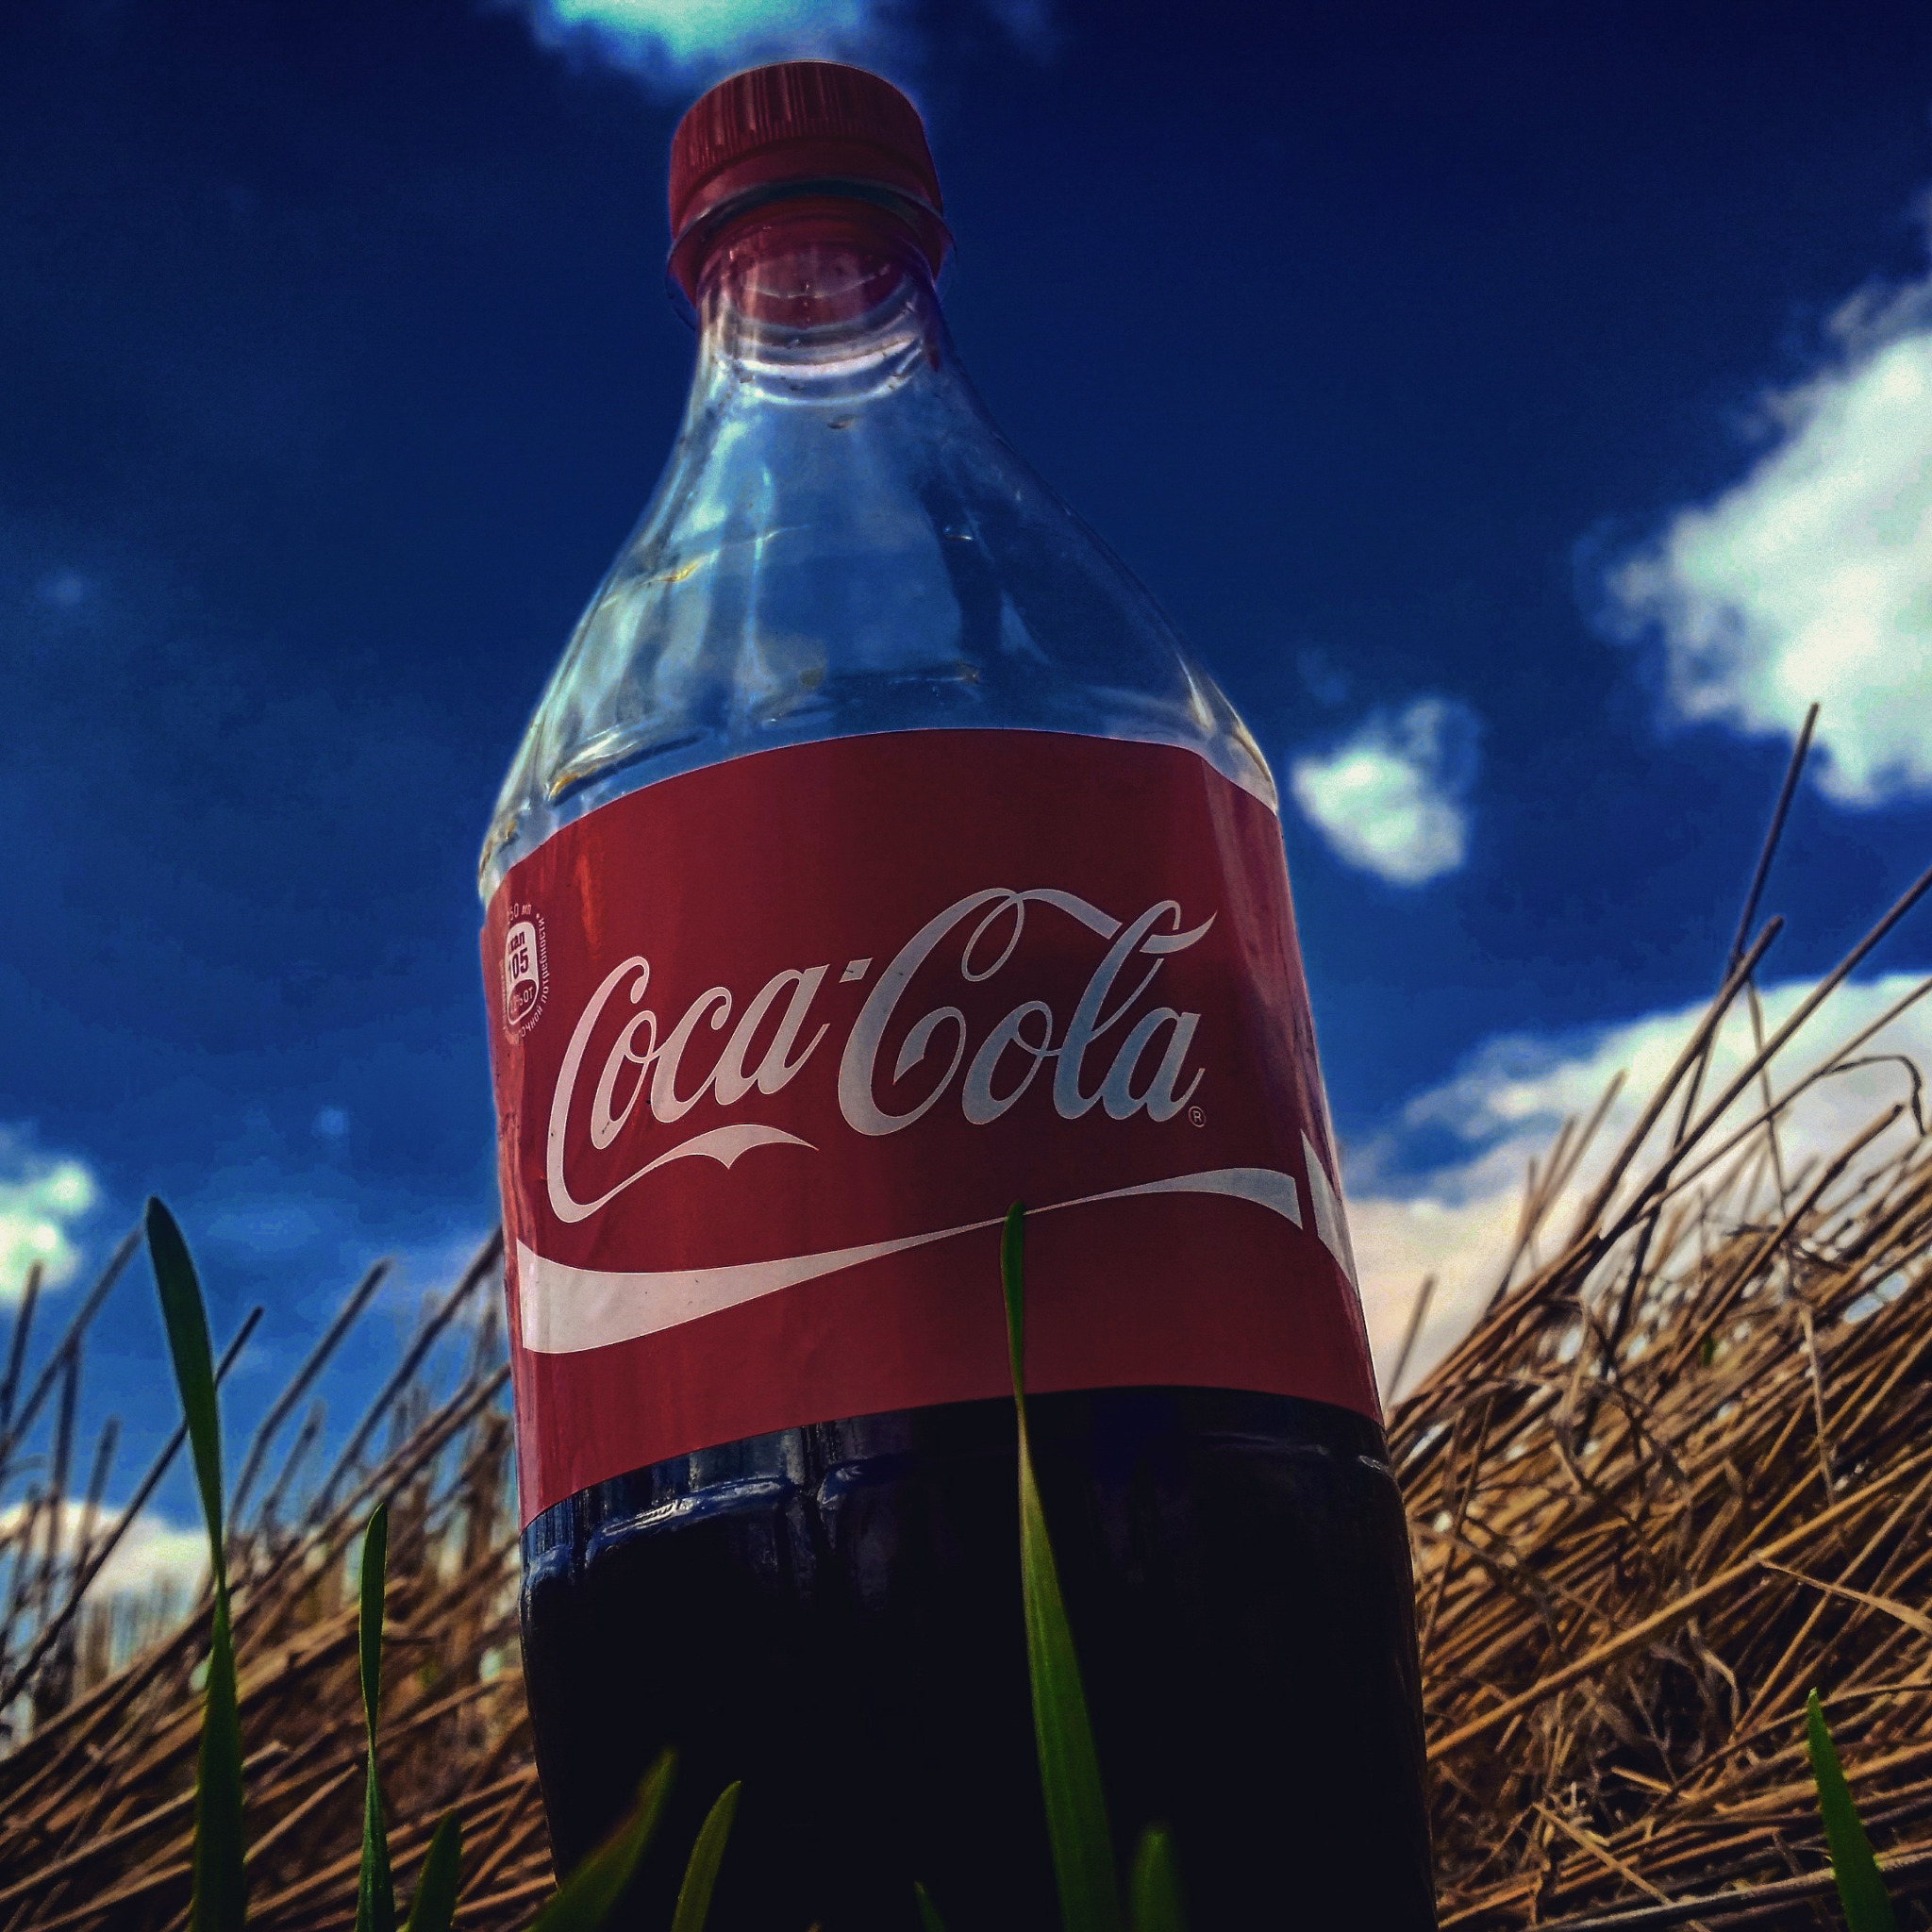 Coca cola steam фото 75